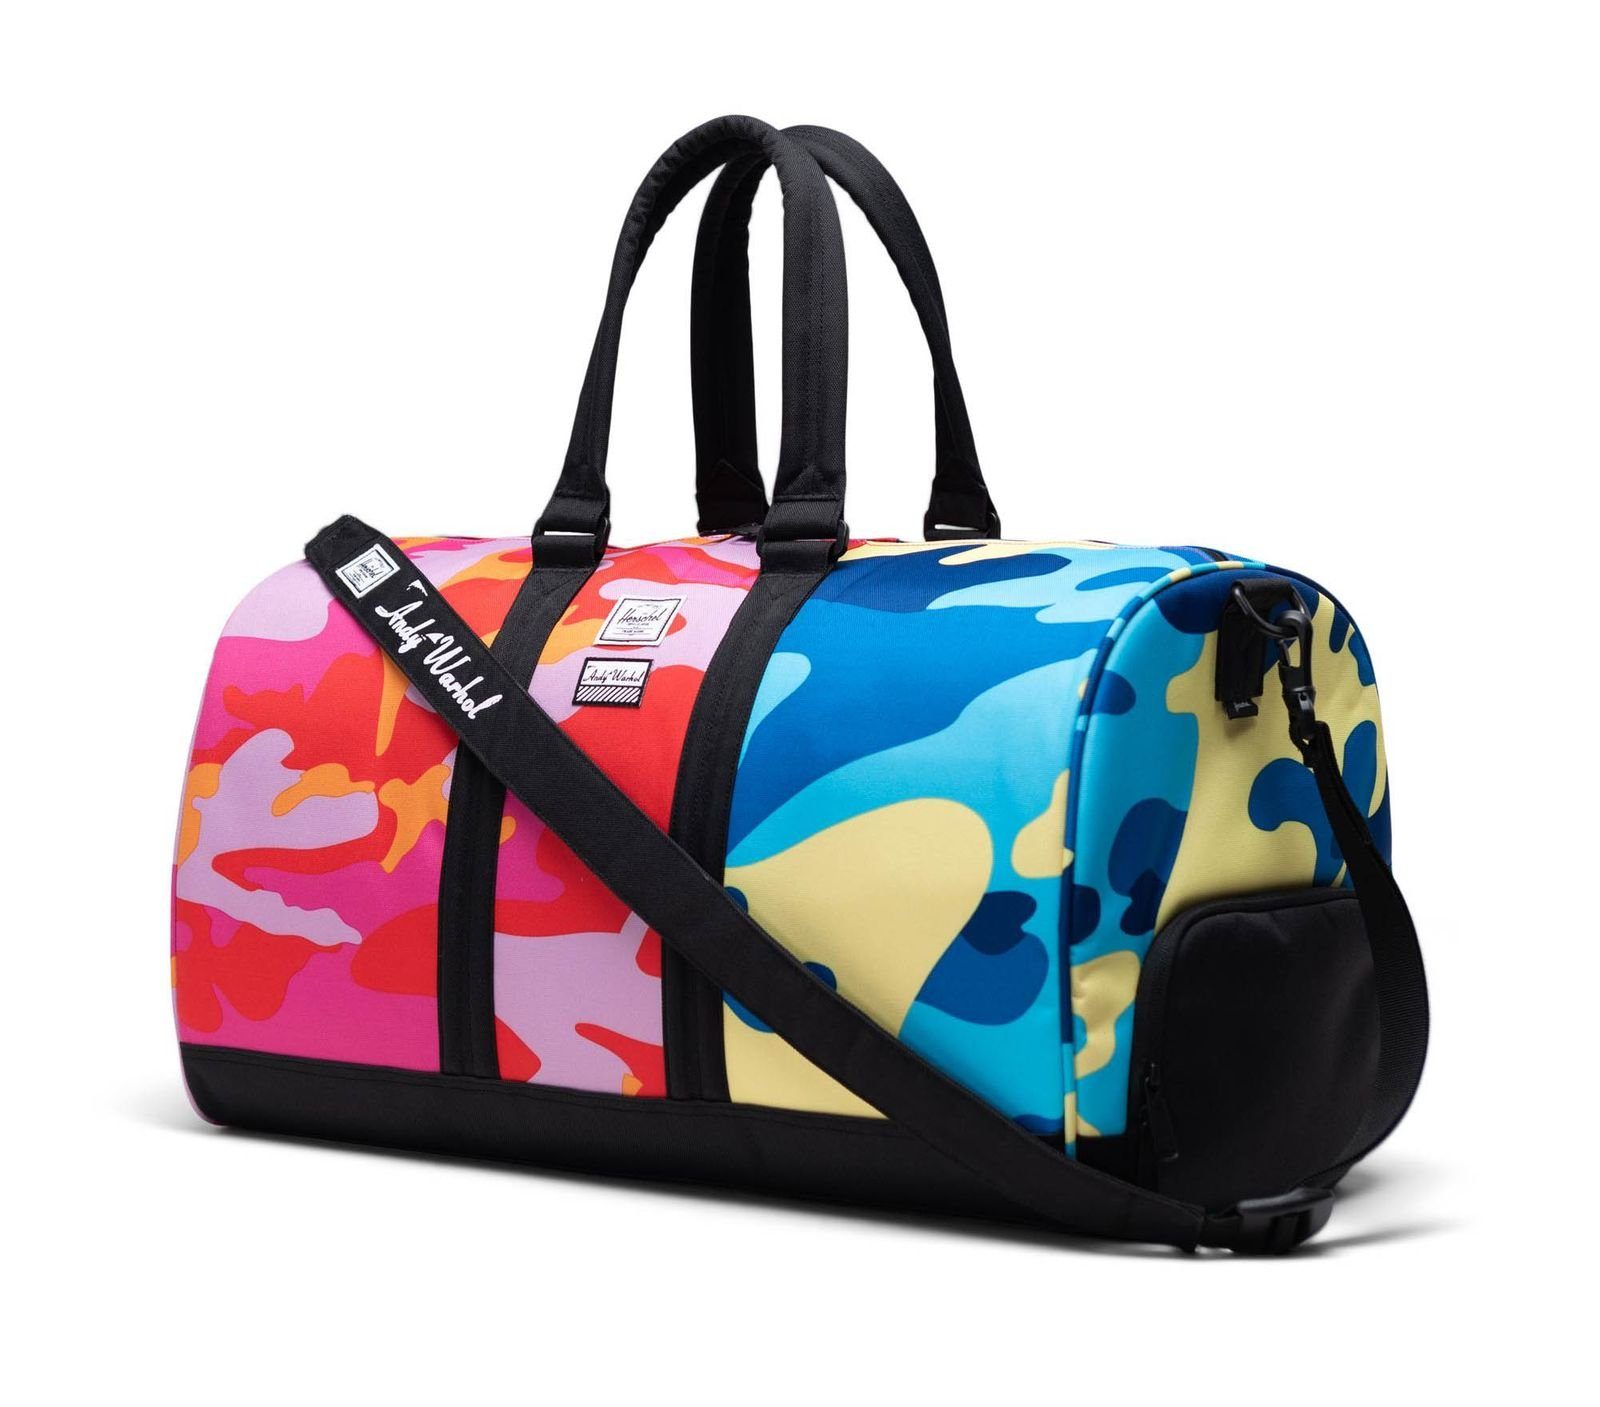 Damen Reisetaschen Herschel Reisetasche Andy Warhol